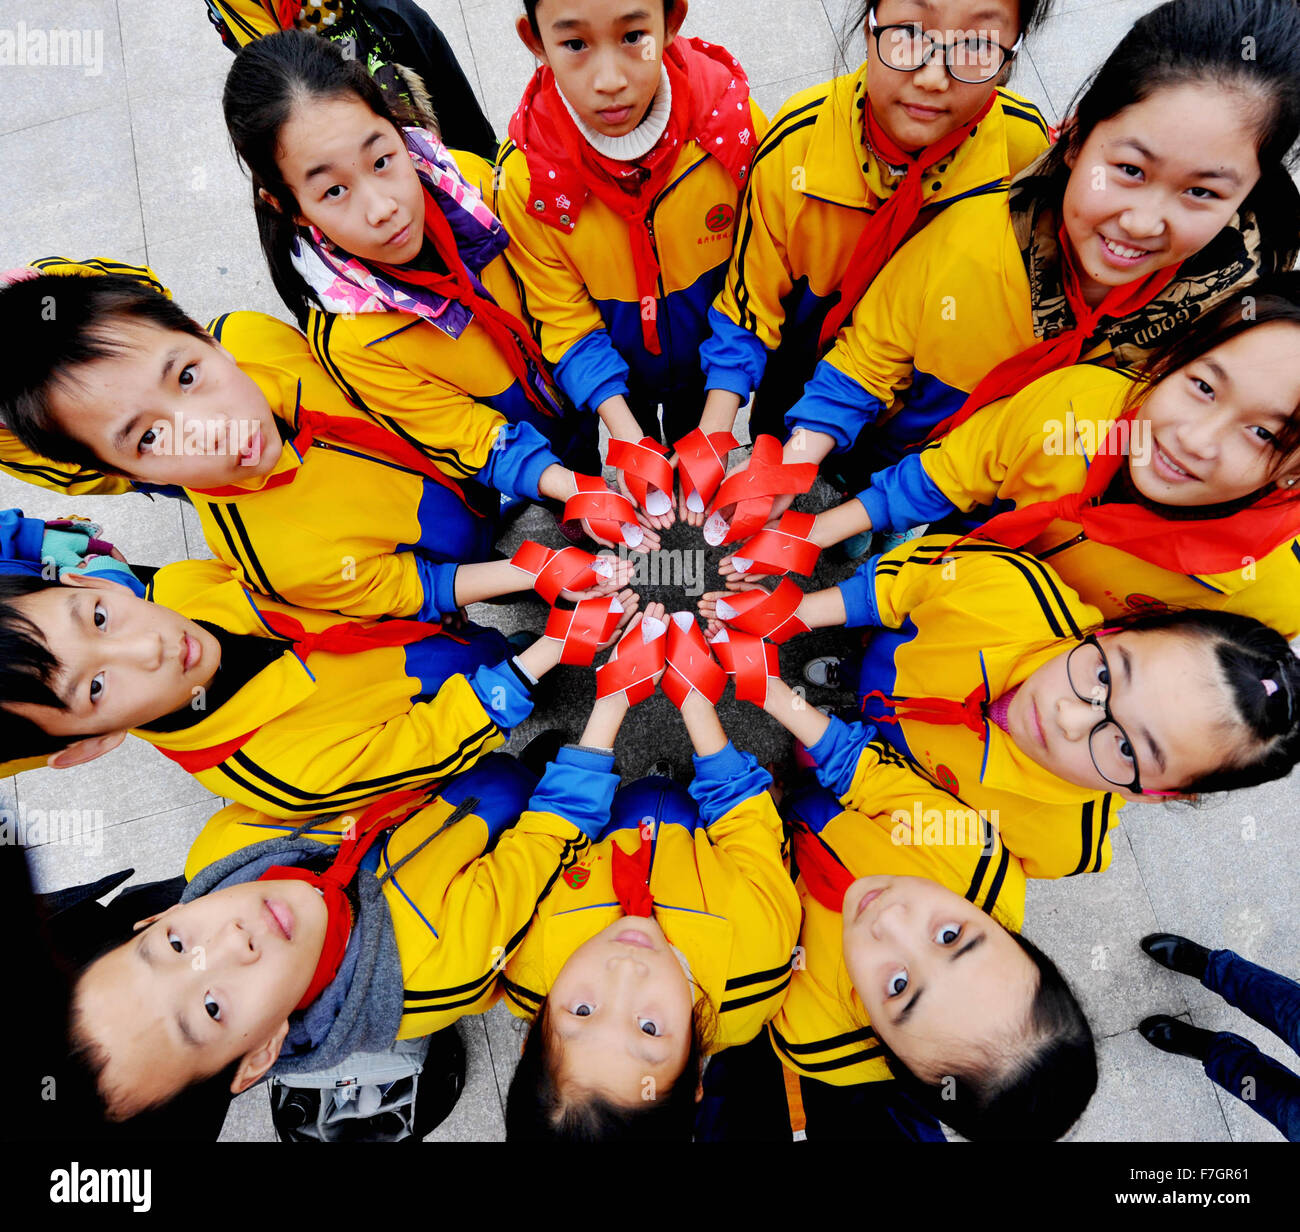 La Chine Shangrao, province de Jiangxi. 1er décembre 2015. Les élèves montrent les rubans rouges, le symbole de la sensibilisation au VIH/SIDA, pour marquer la Journée mondiale du sida en Chine orientale, Ville Dexing Jiangxi Province, du 1 décembre 2015. La Journée mondiale du sida, qui a commencé en 1988, est célébrée chaque année le 1er décembre pour élever la conscience de SIDA. Credit : Zhuo Zhongwei/Xinhua/Alamy Live News Banque D'Images